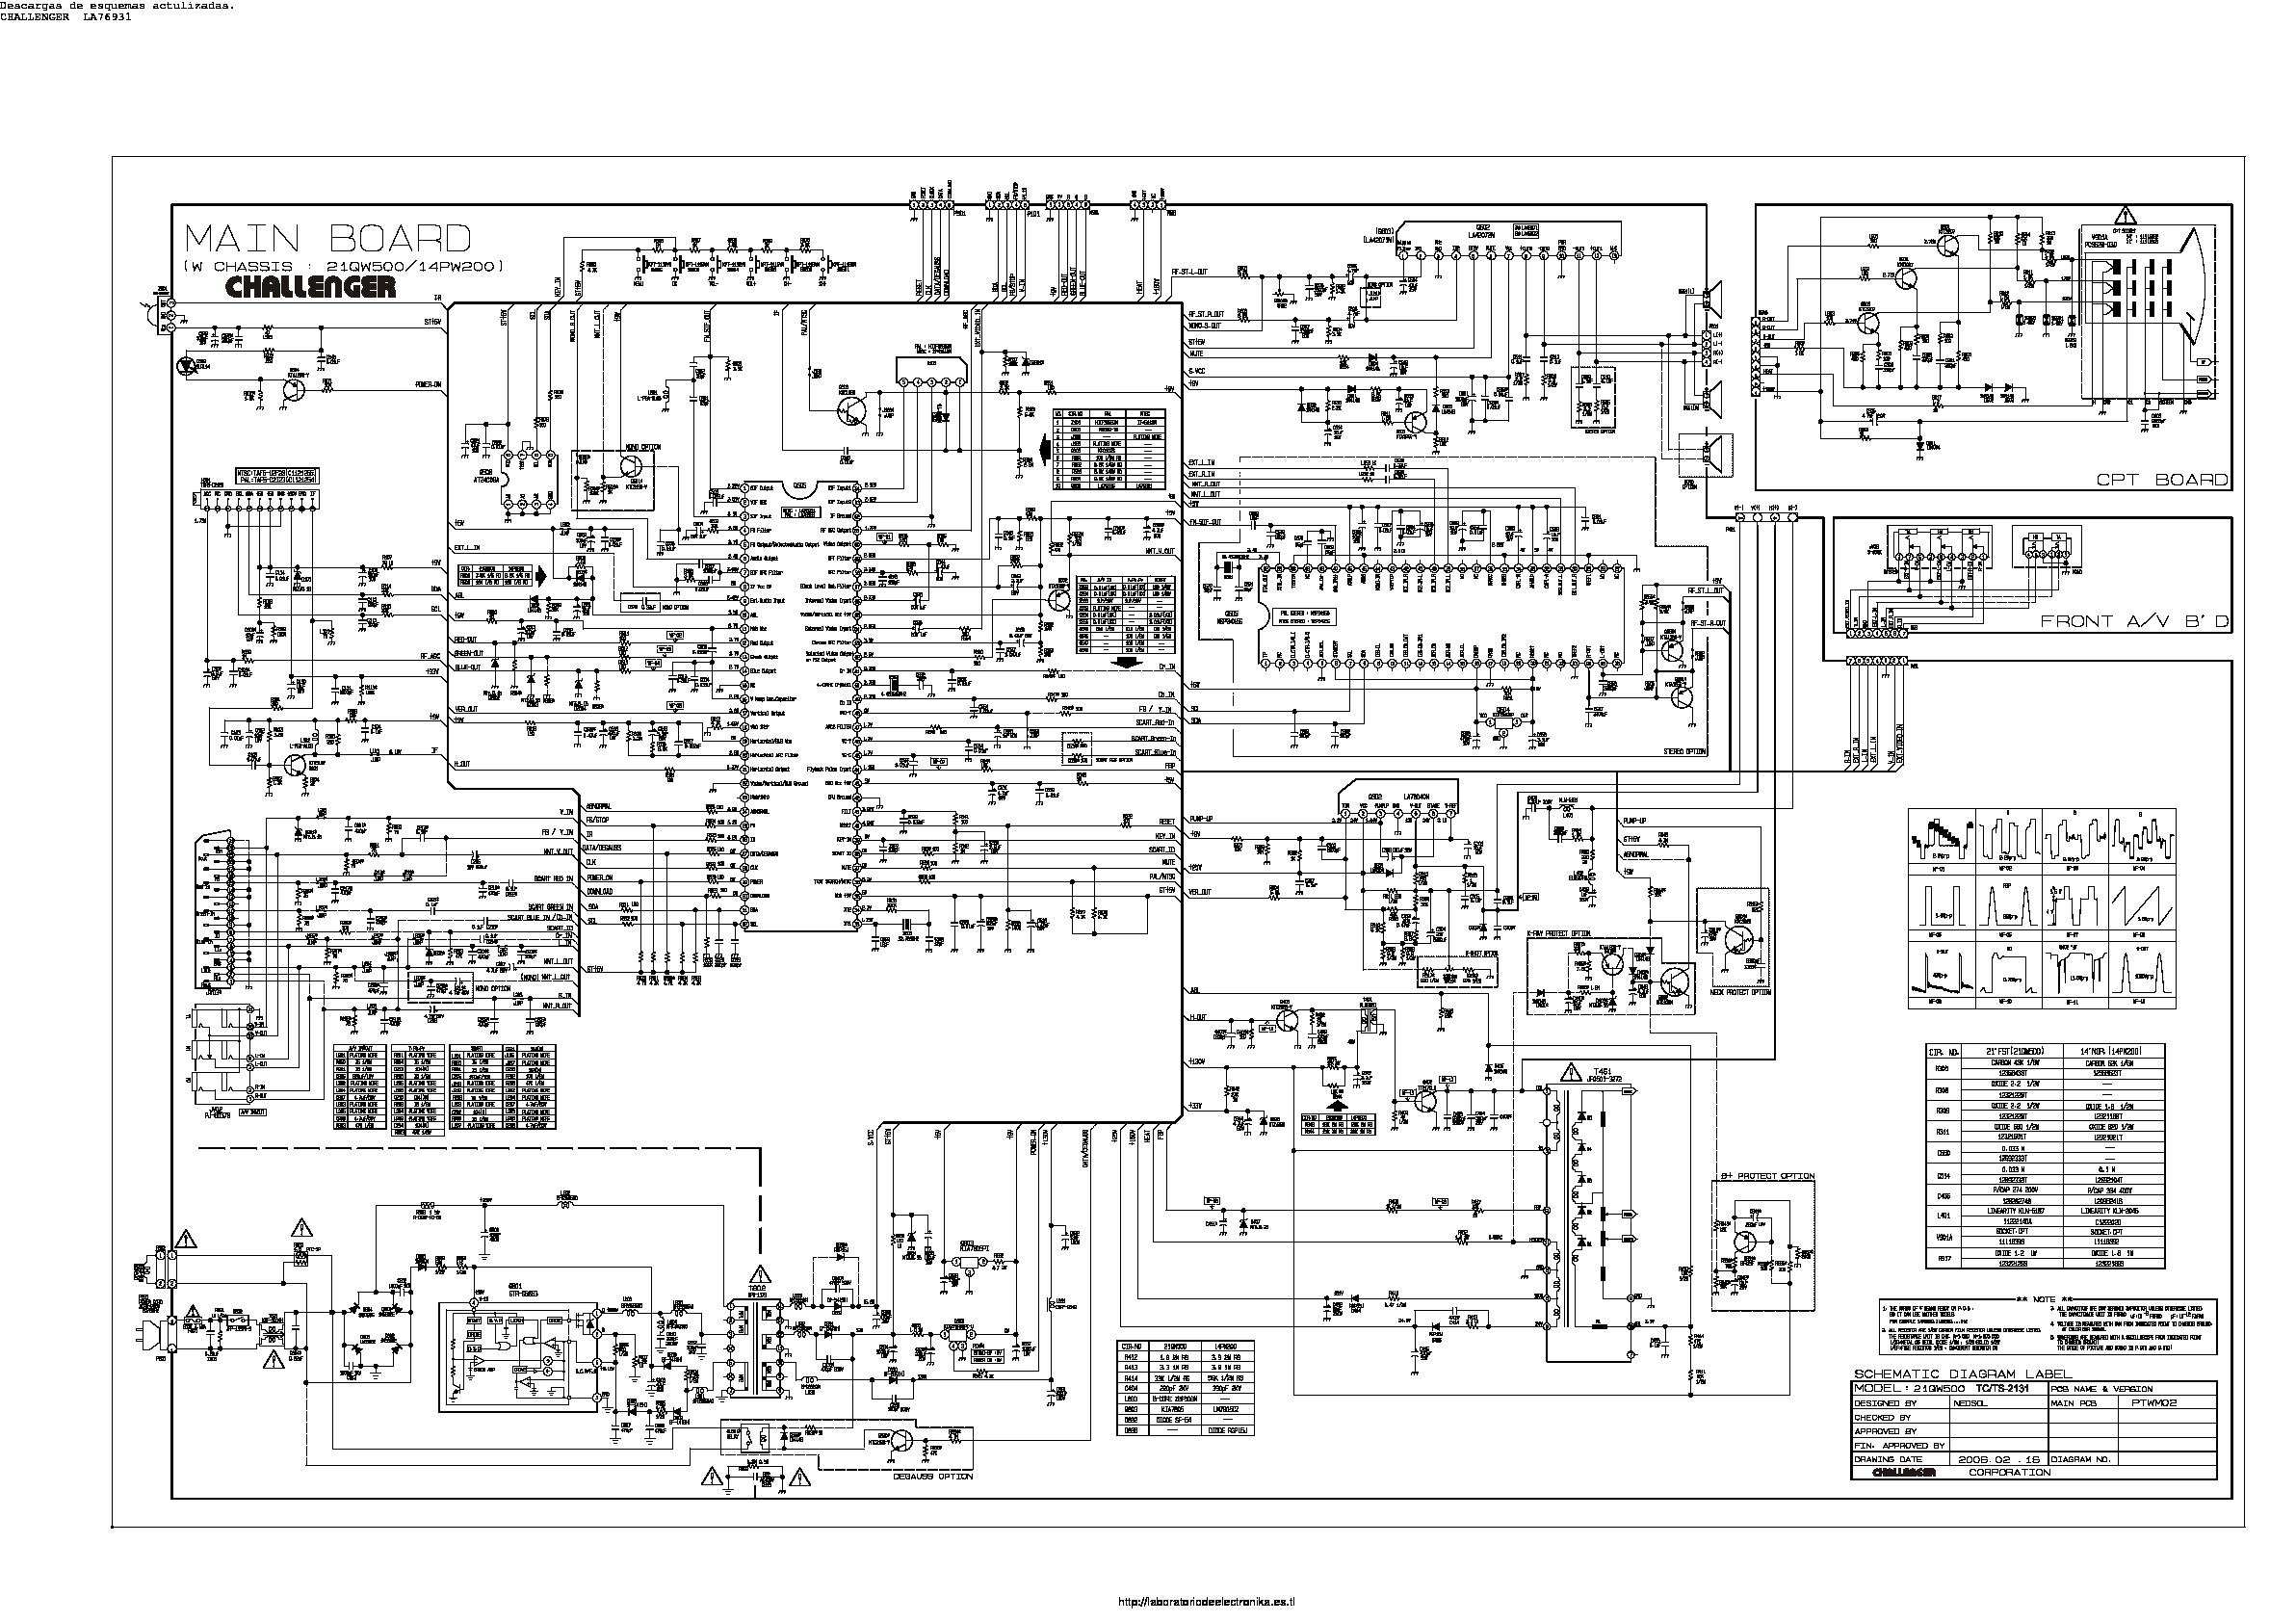 Circuit Diagram Of 8873 Tv Kit Pdf - Circuit Diagram Images